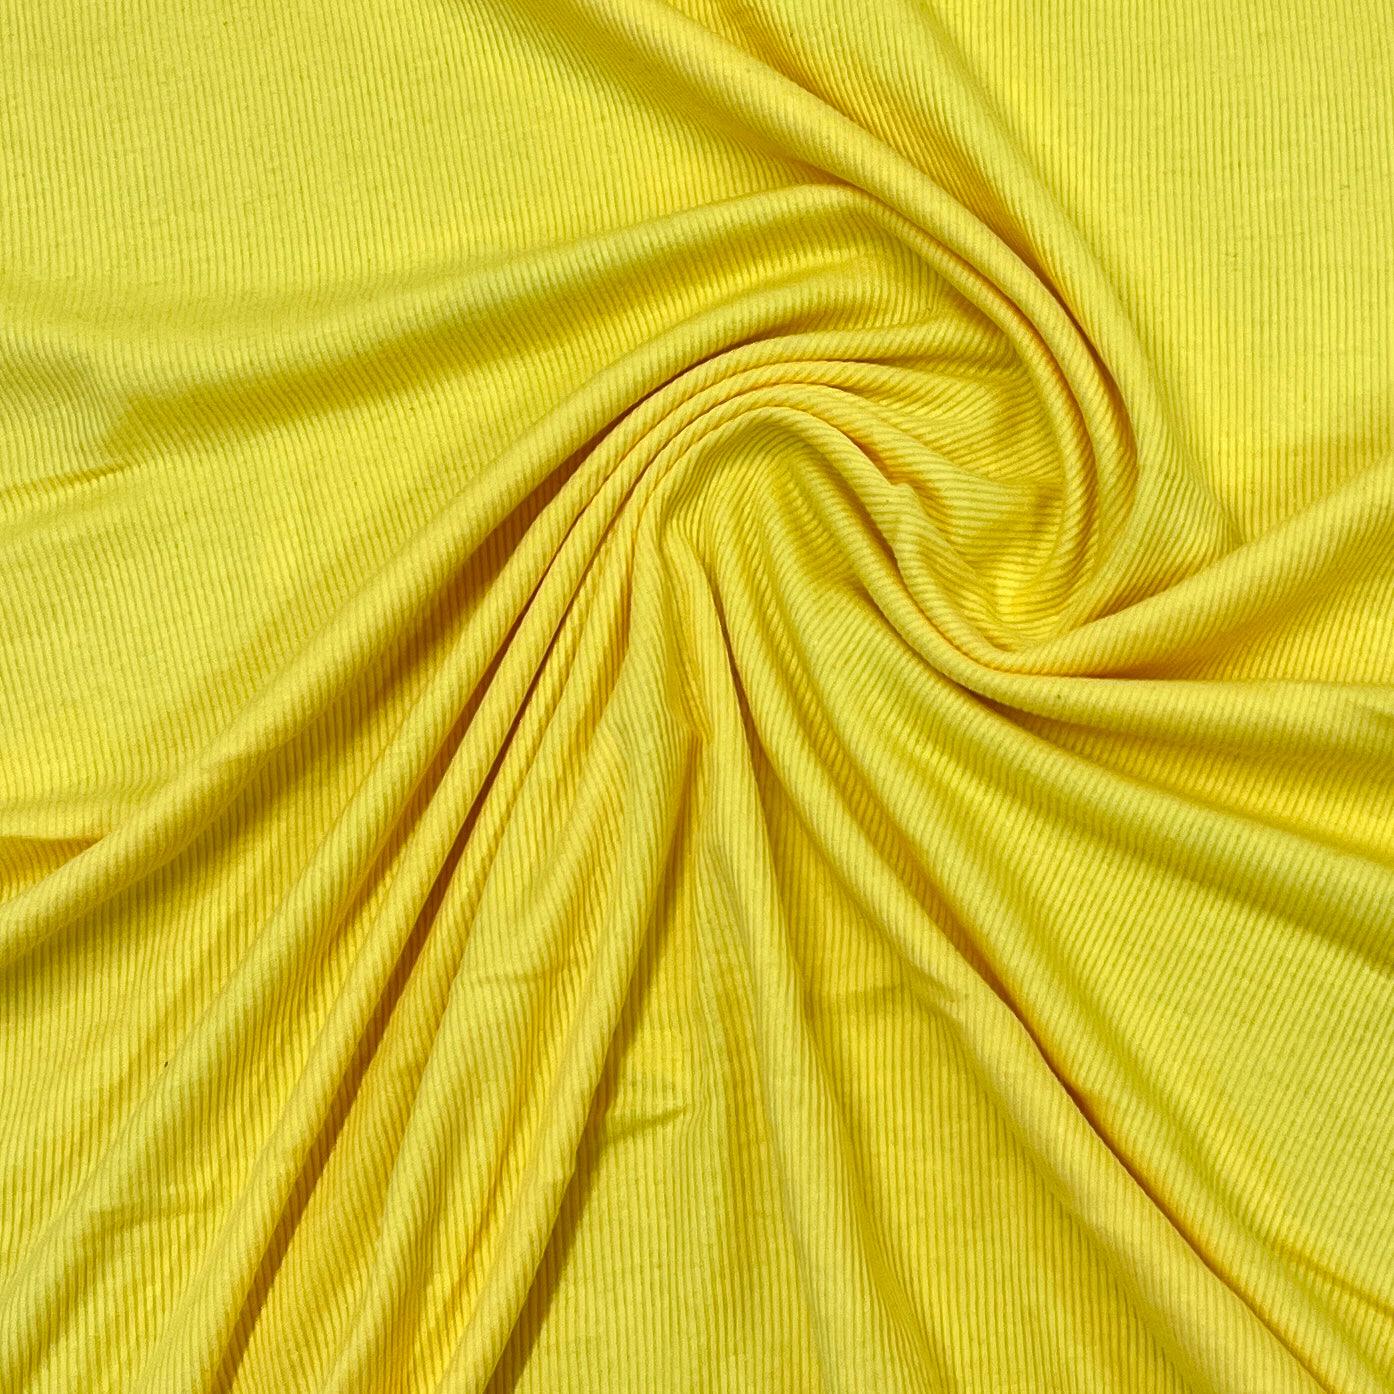 Bright Yellow Cotton Rib Knit Fabric - 2x2 - Nature's Fabrics